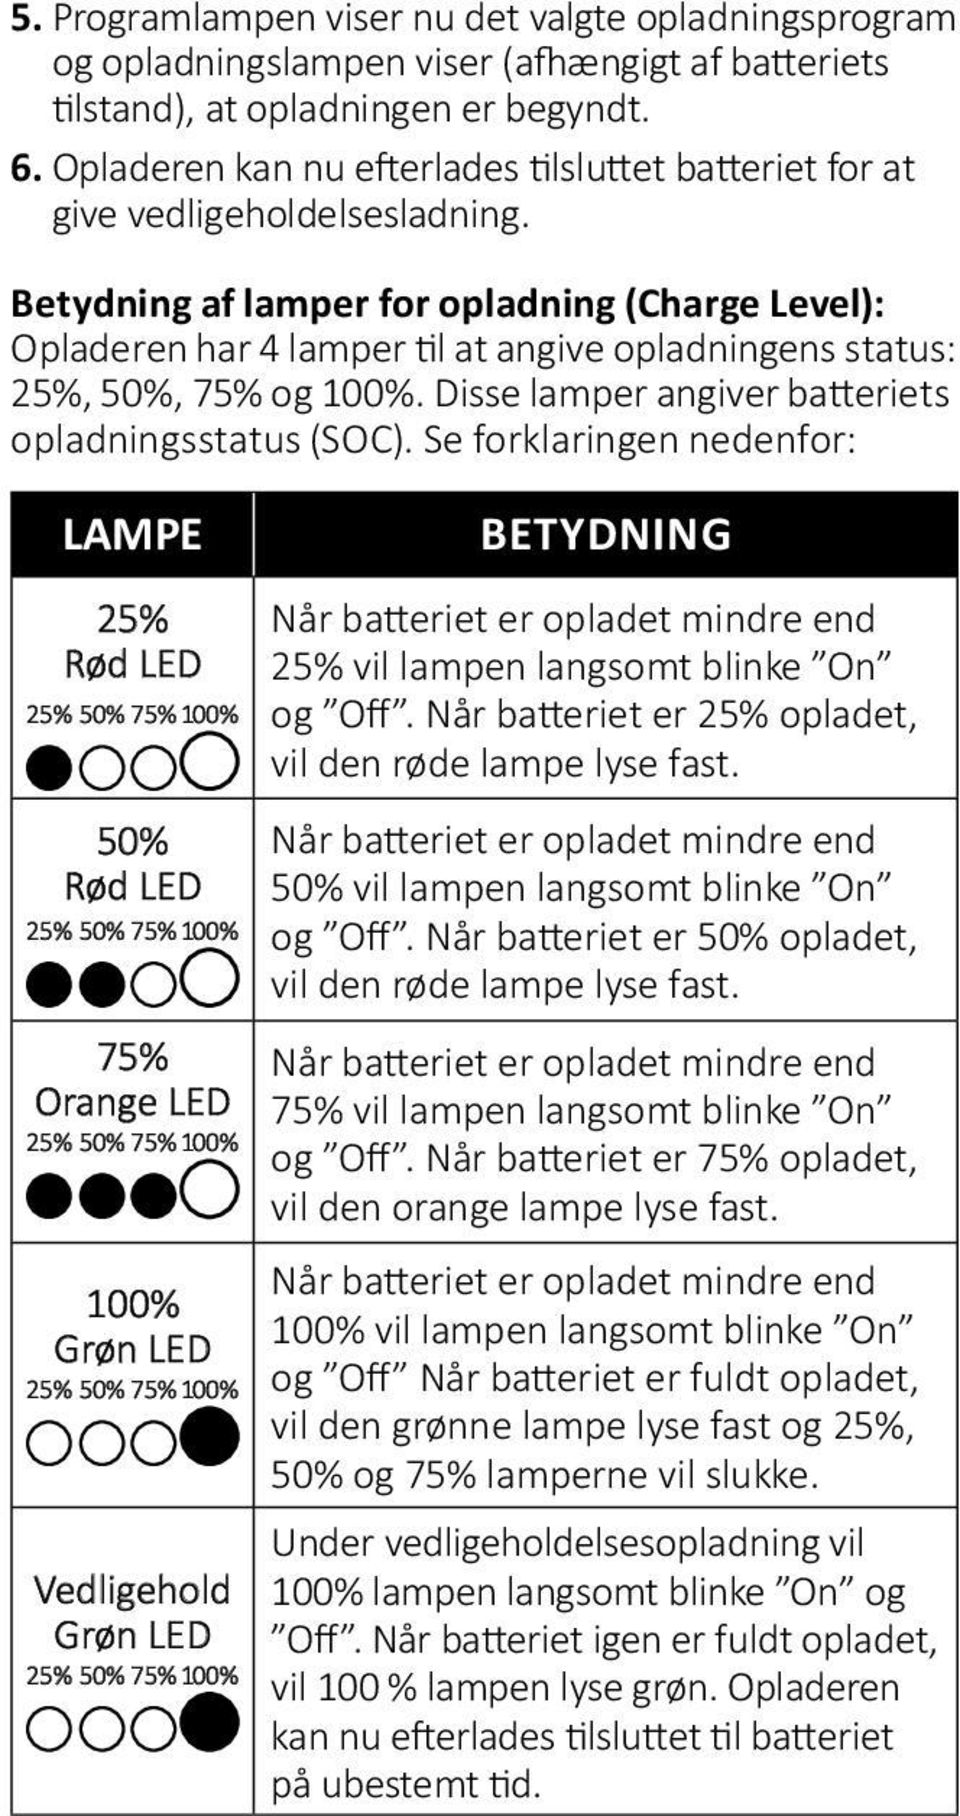 Betydning af lamper for opladning (Charge Level): Opladeren har 4 lamper til at angive opladningens status: 25%, 50%, 75% og 100%. Disse lamper angiver batteriets opladningsstatus (SOC).